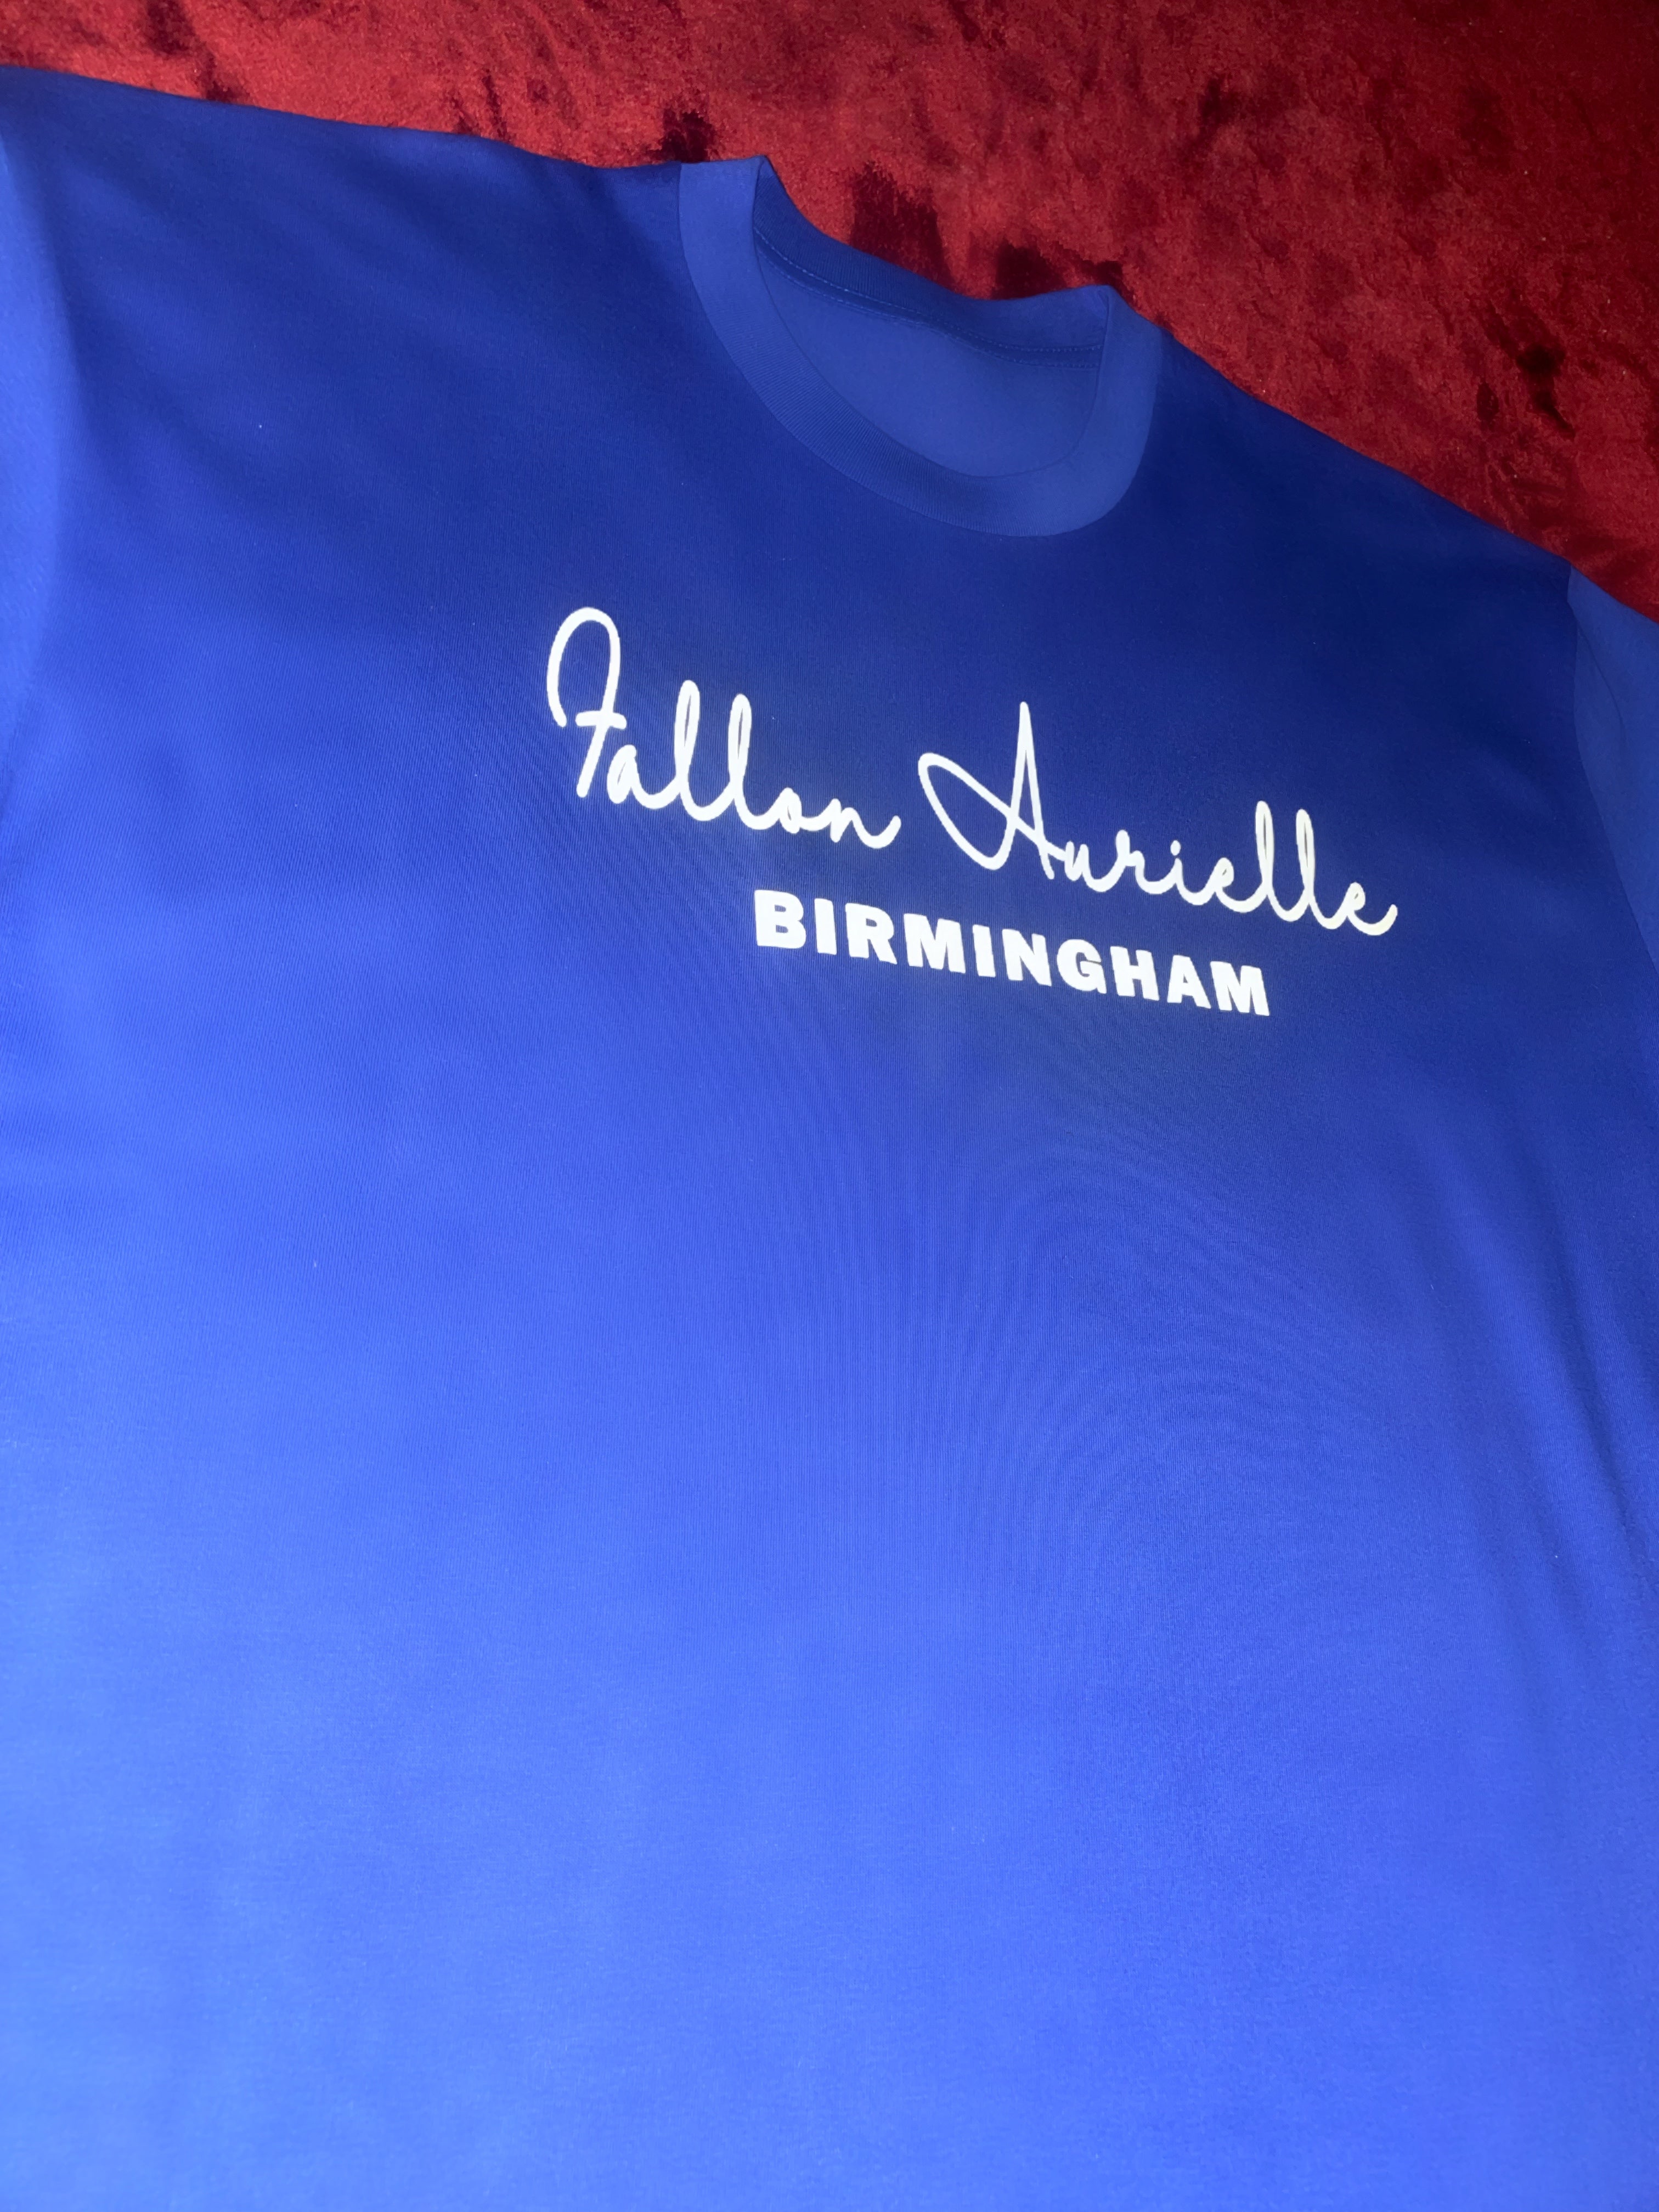 Fallon Aurielle Unisex Signature 3 Piece Birmingham Short Set (Royal Blue & White)